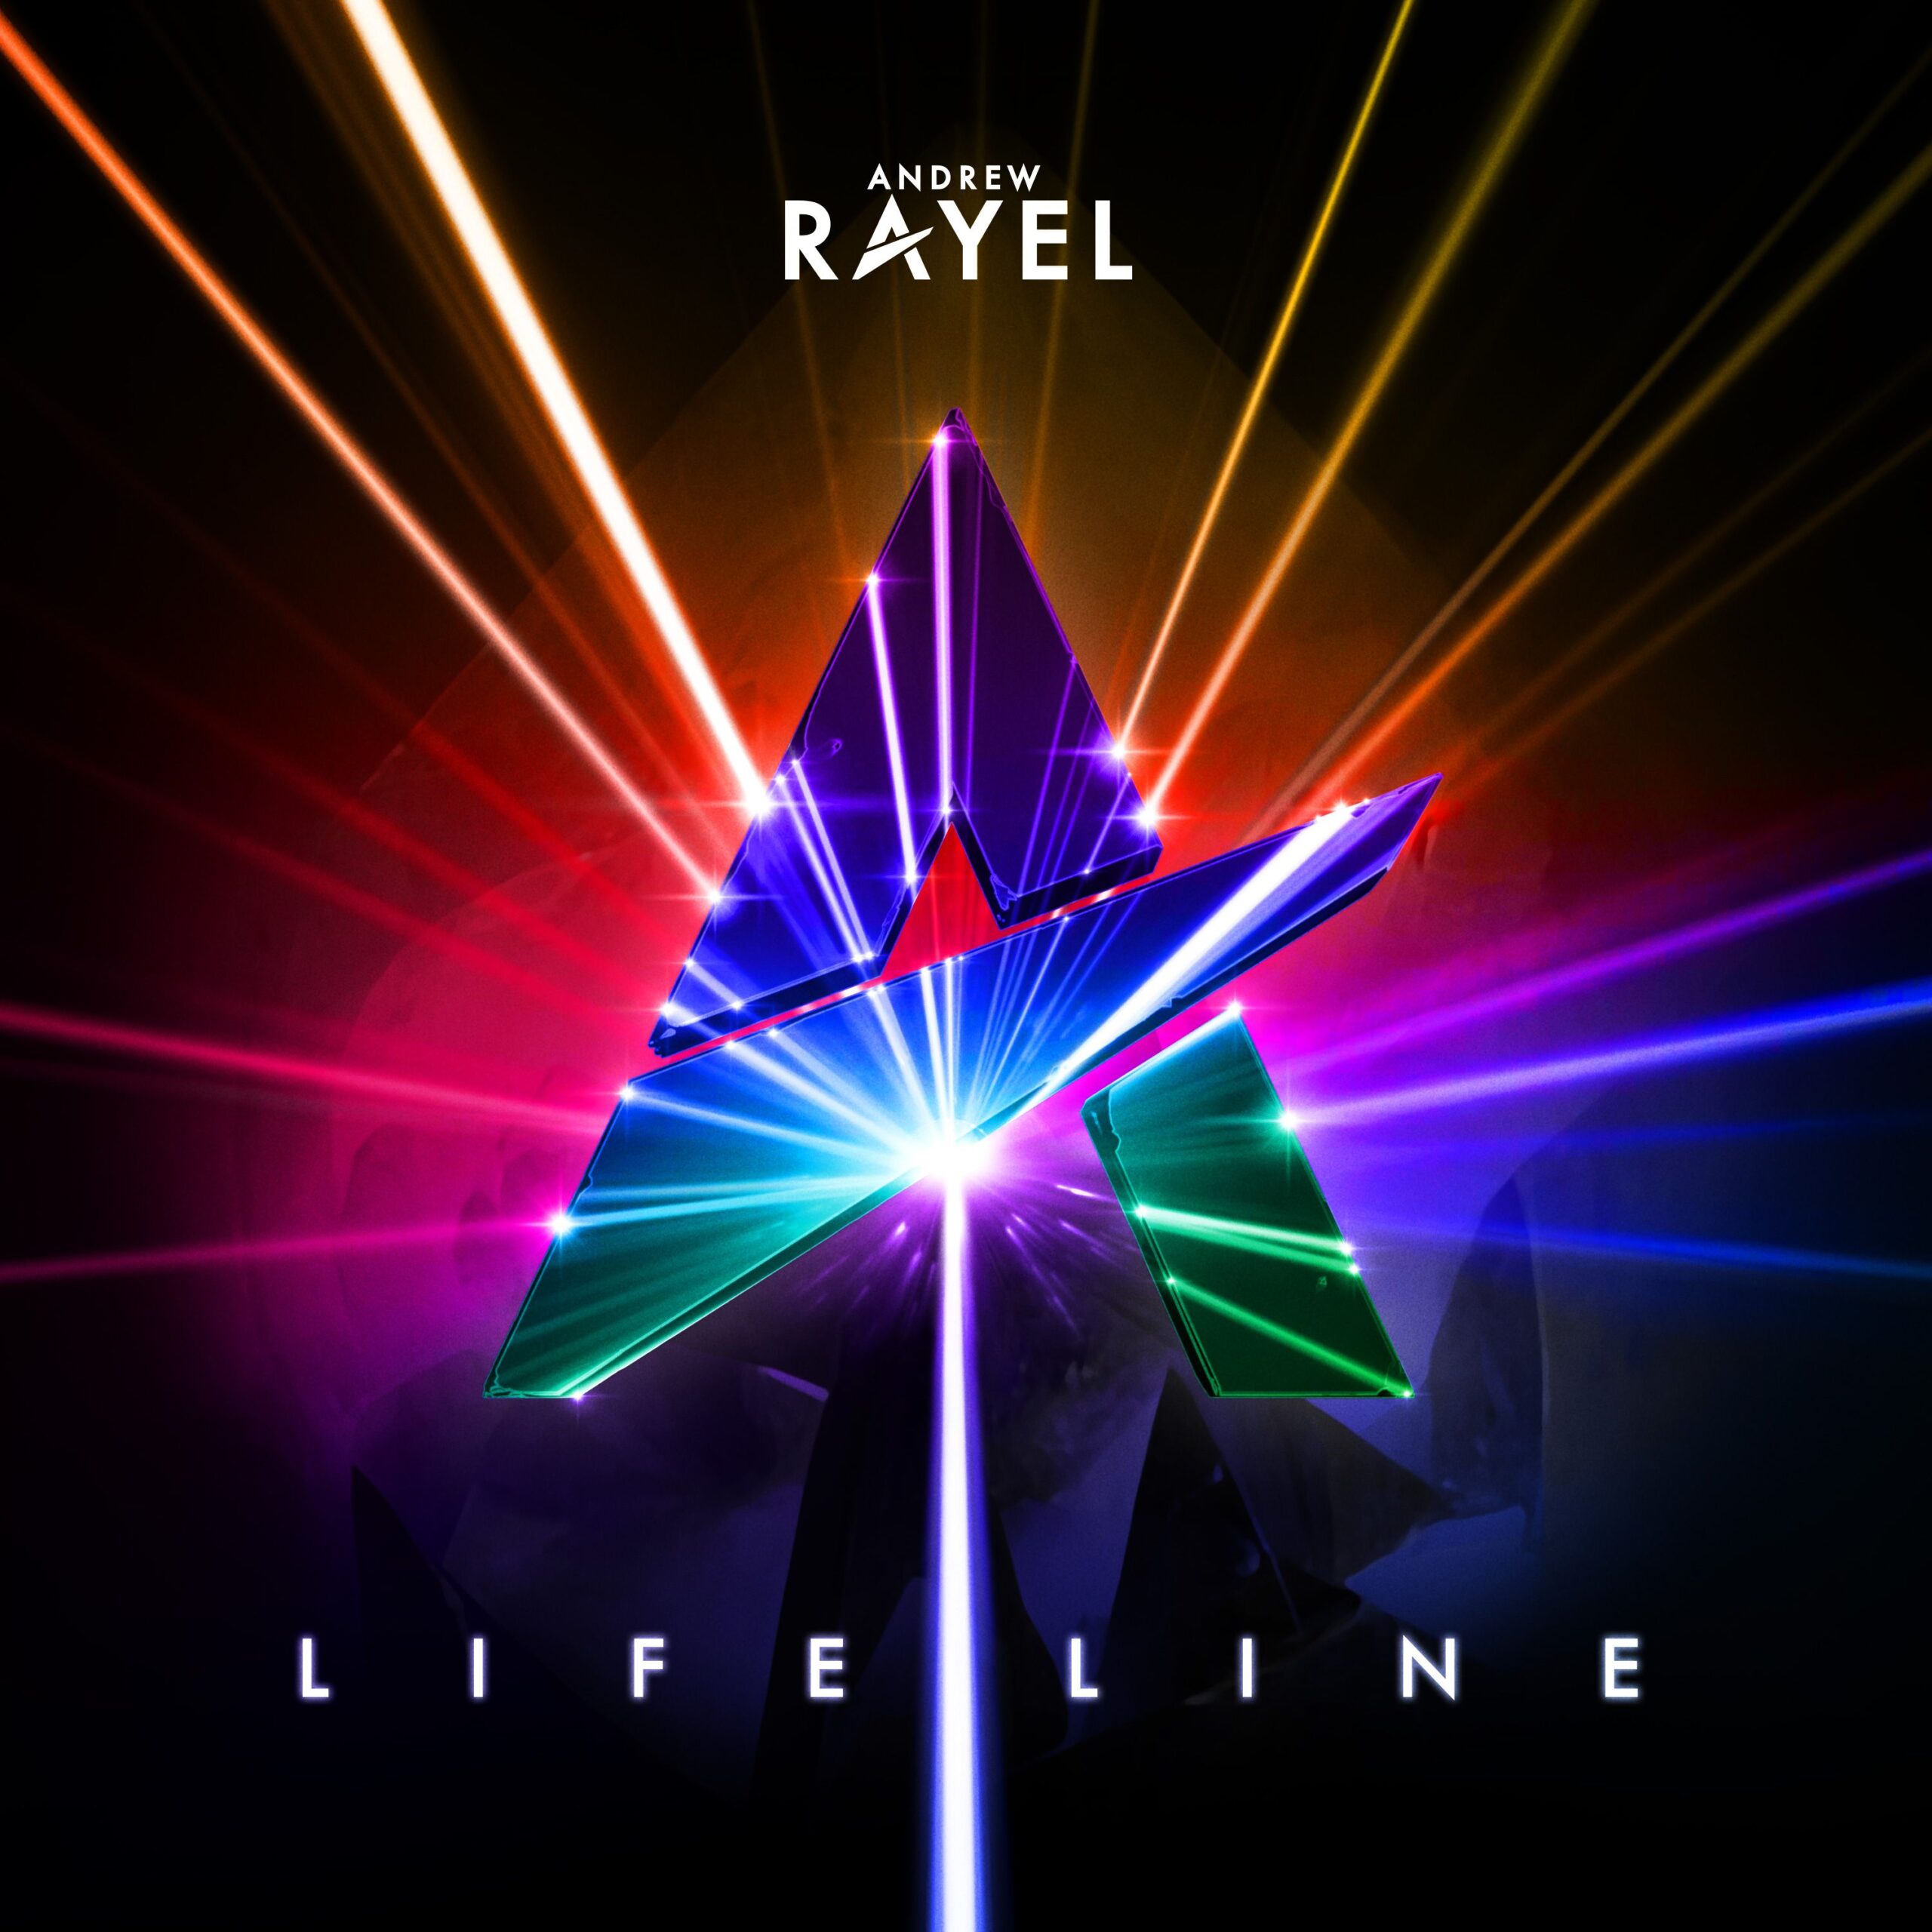 Andrew Rayel presents Lifeline (album) on Armada Music